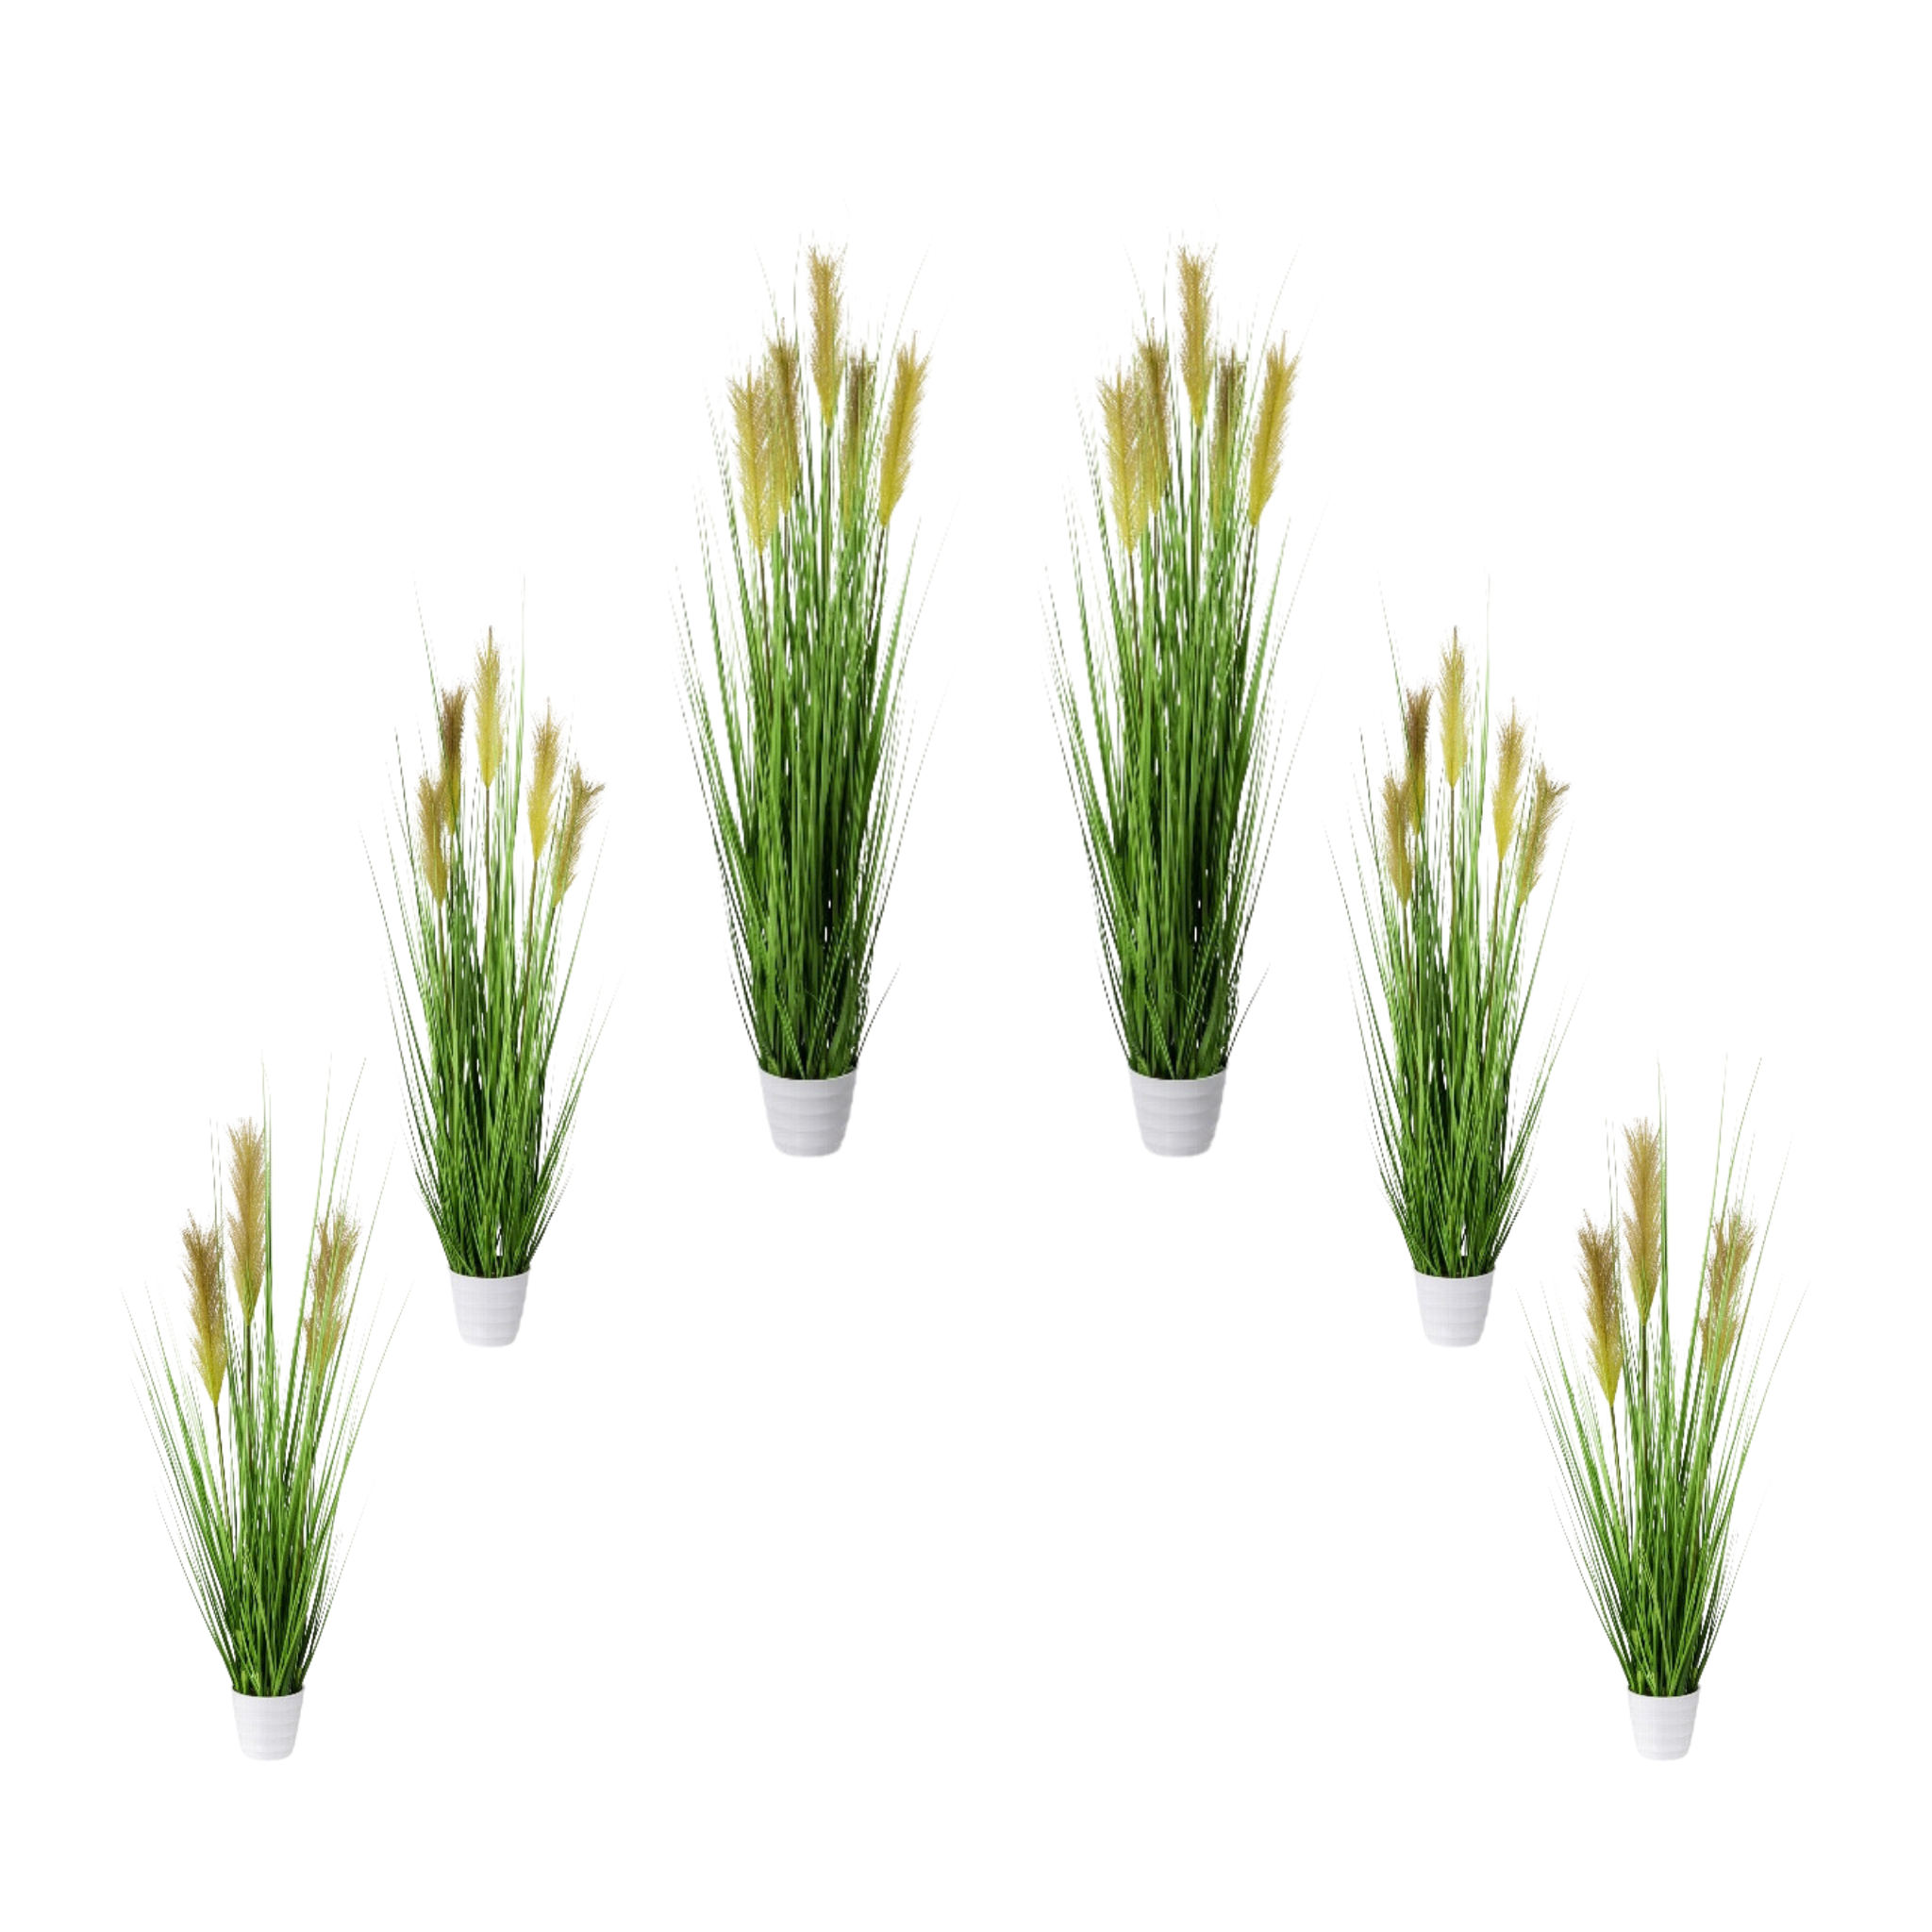 Grass bush artificial plants artificial grass deco set of 6 large